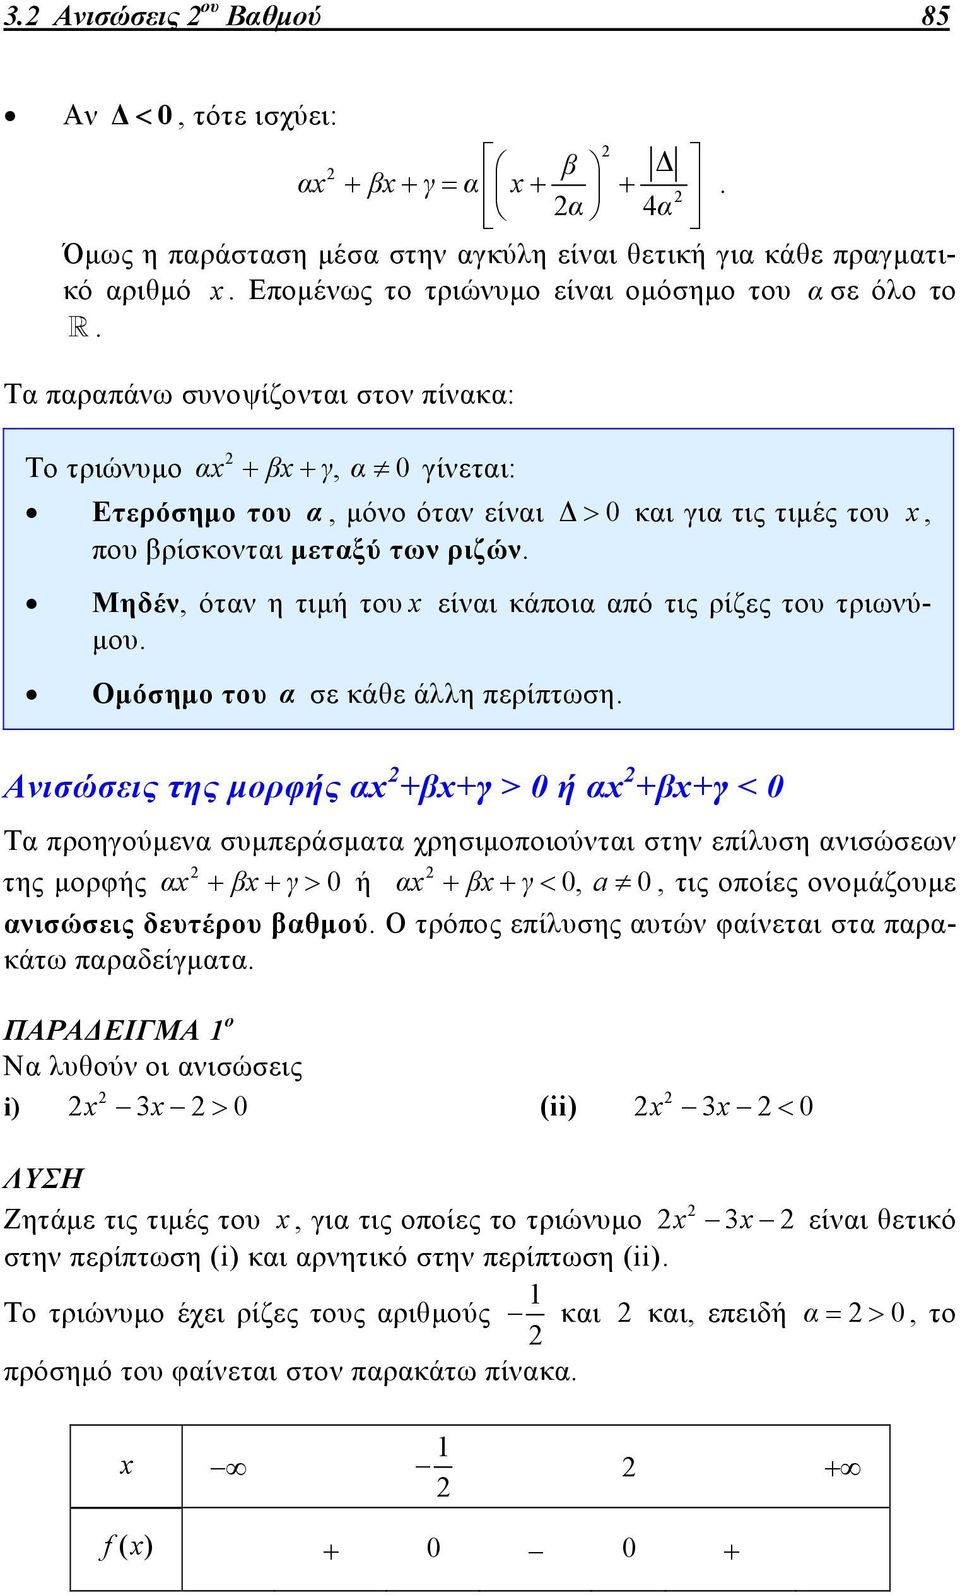 του τριωνύμου Ομόσημο του α σε κάθε άλλη περίπτωση νισώσεις της μορφής α +β+γ > 0 ή α +β+γ < 0 Τα προηγούμενα συμπεράσματα χρησιμοποιούνται στην επίλυση ανισώσεων της μορφής α β γ 0 ή α β γ 0, a 0,